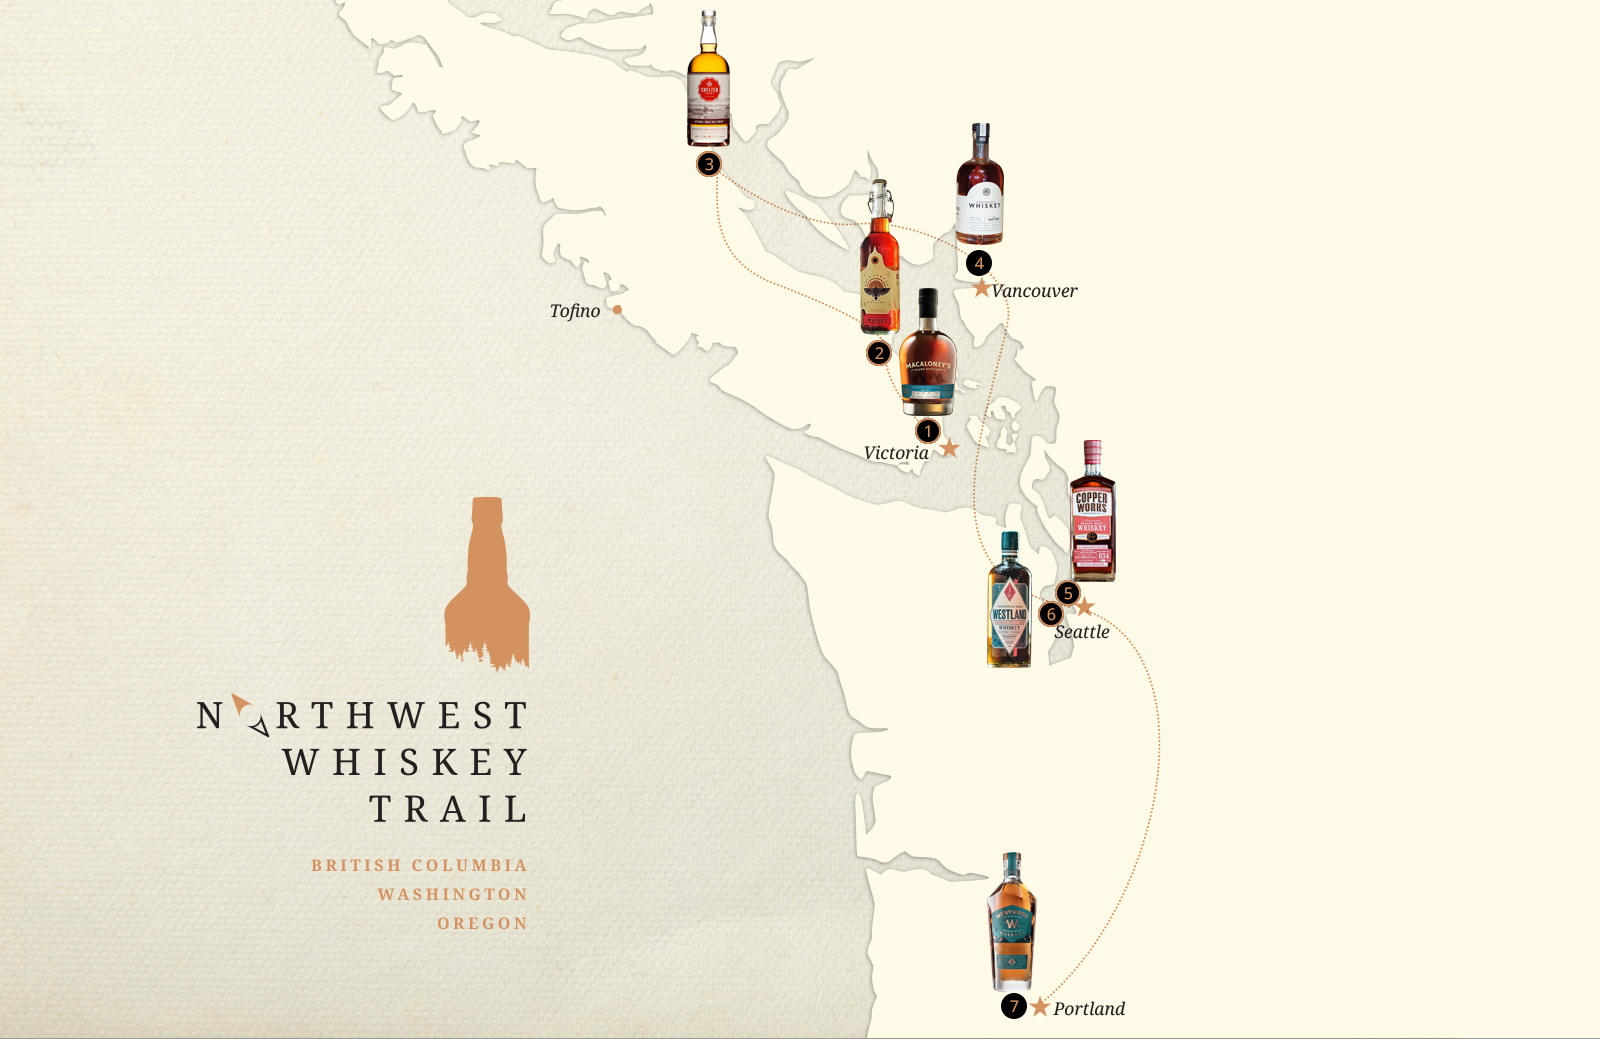 Northwest Whiskey Trail Map